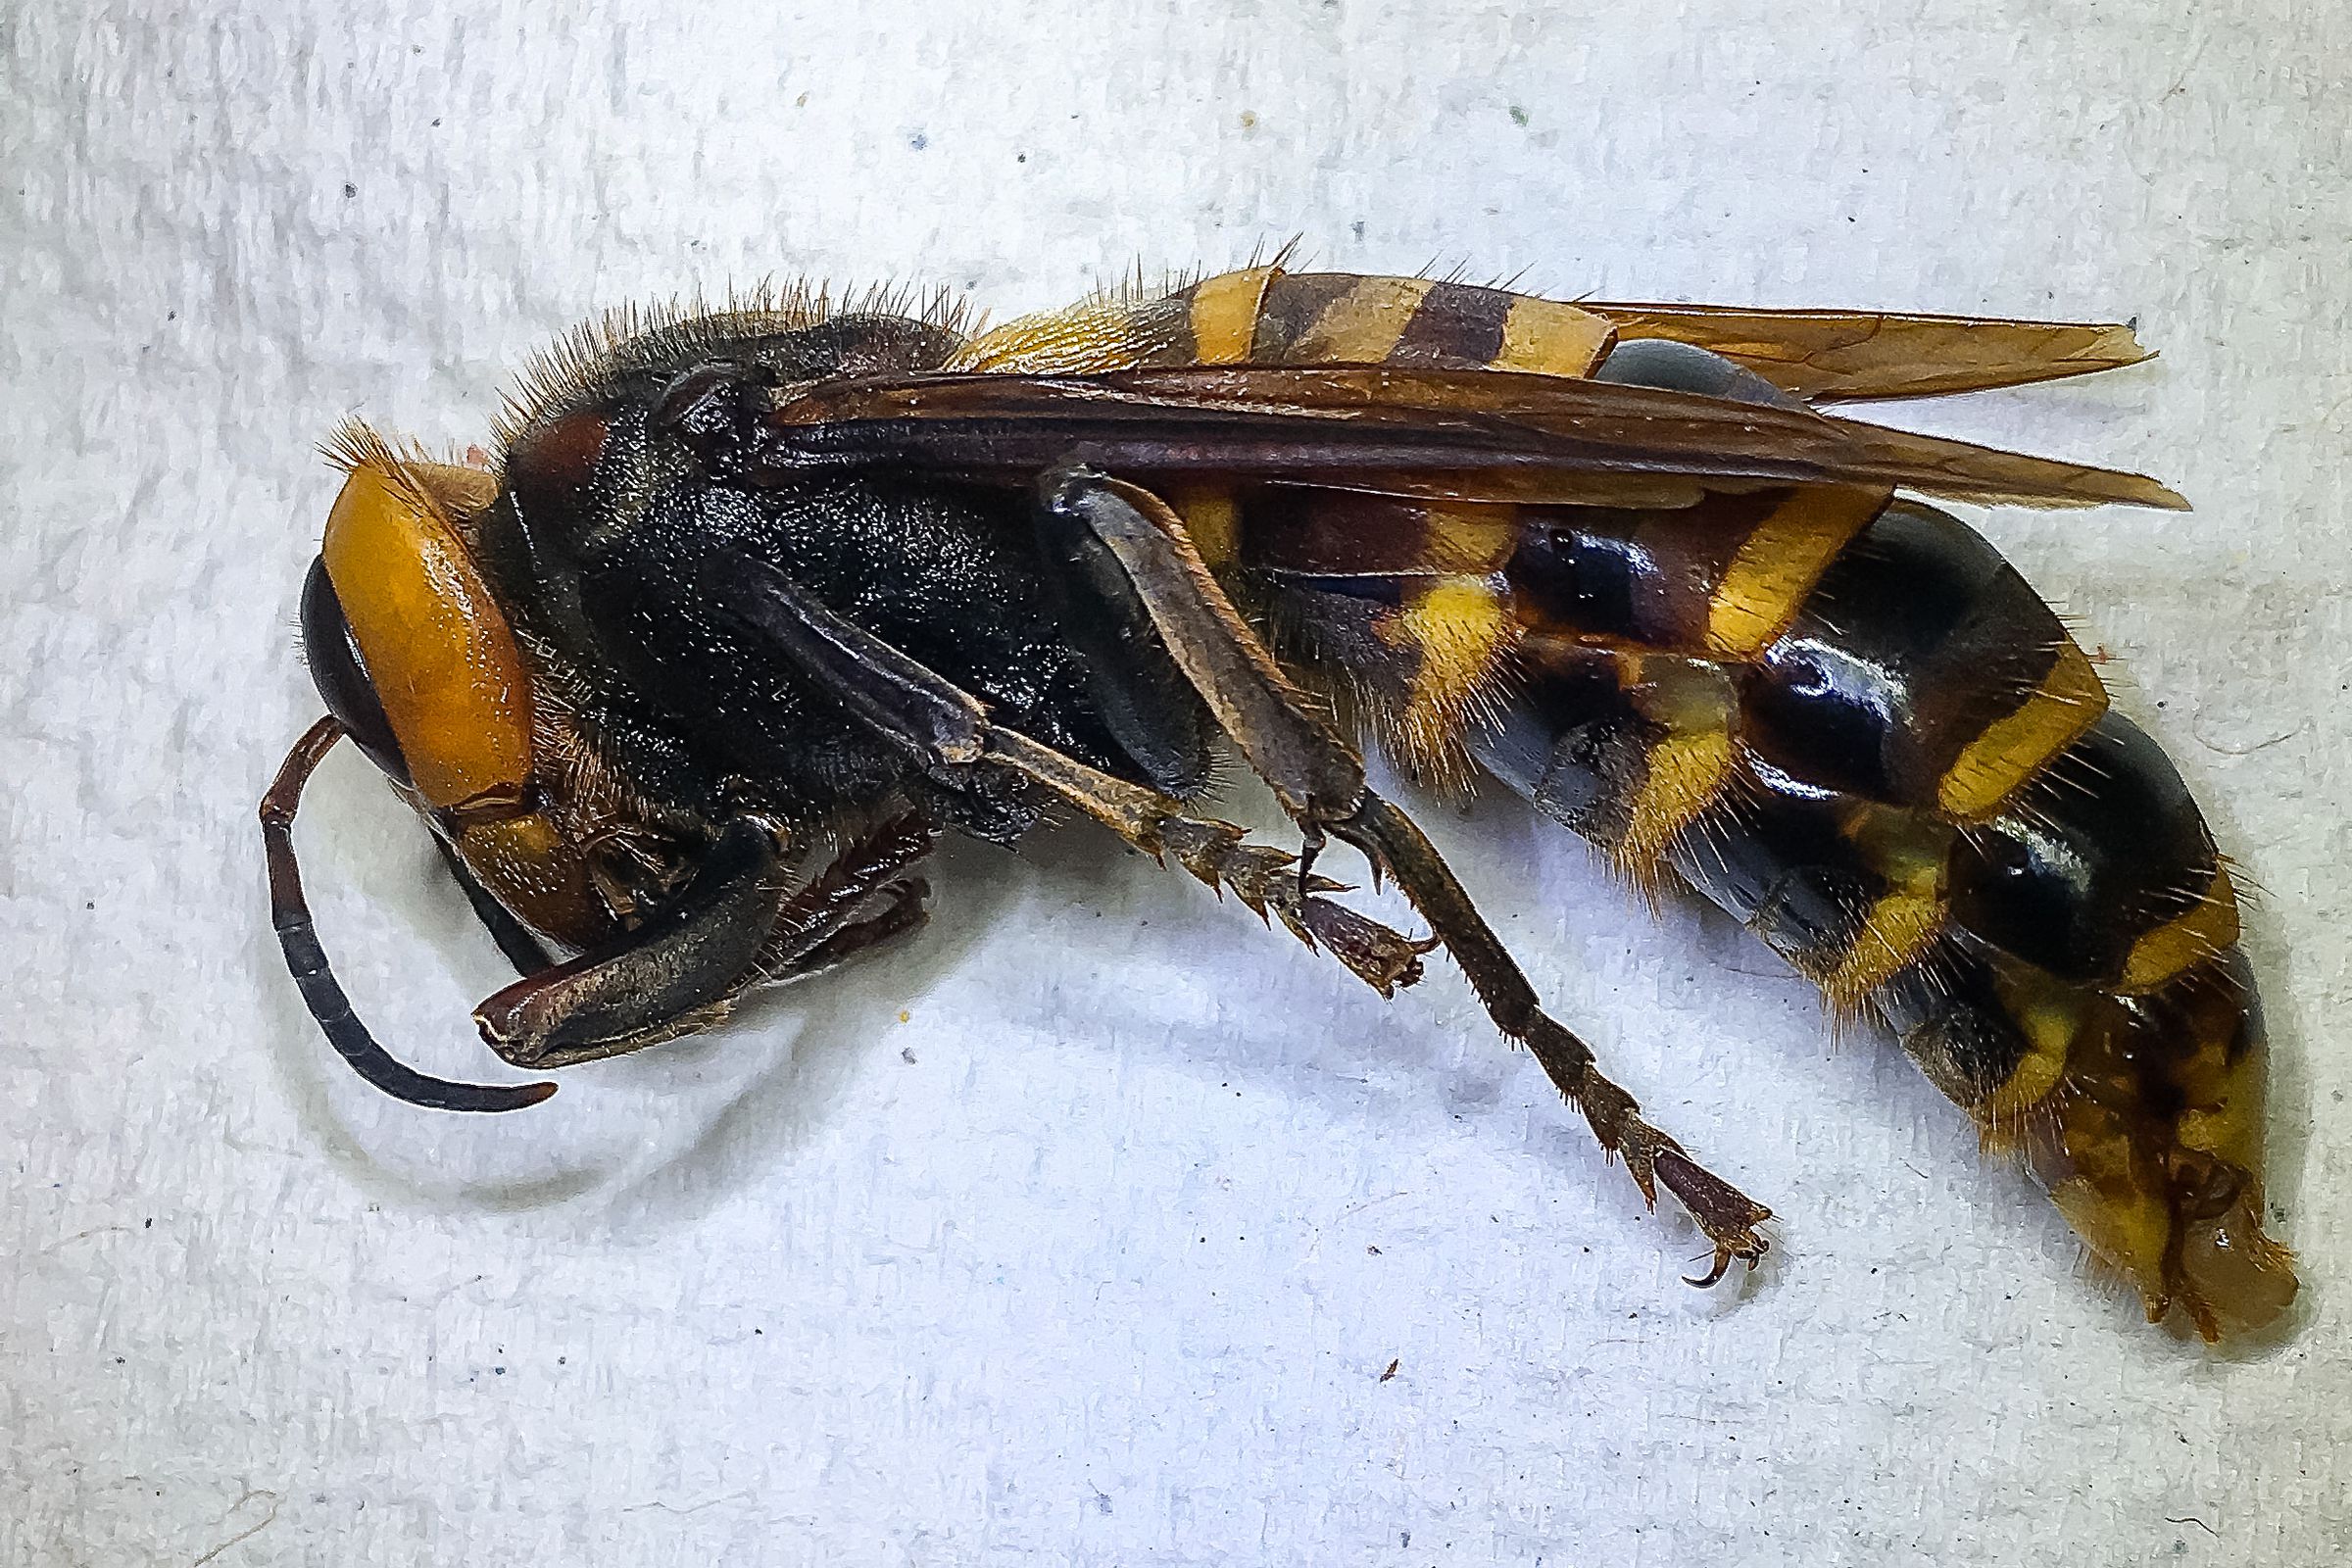 Murder hornet. Dead. 